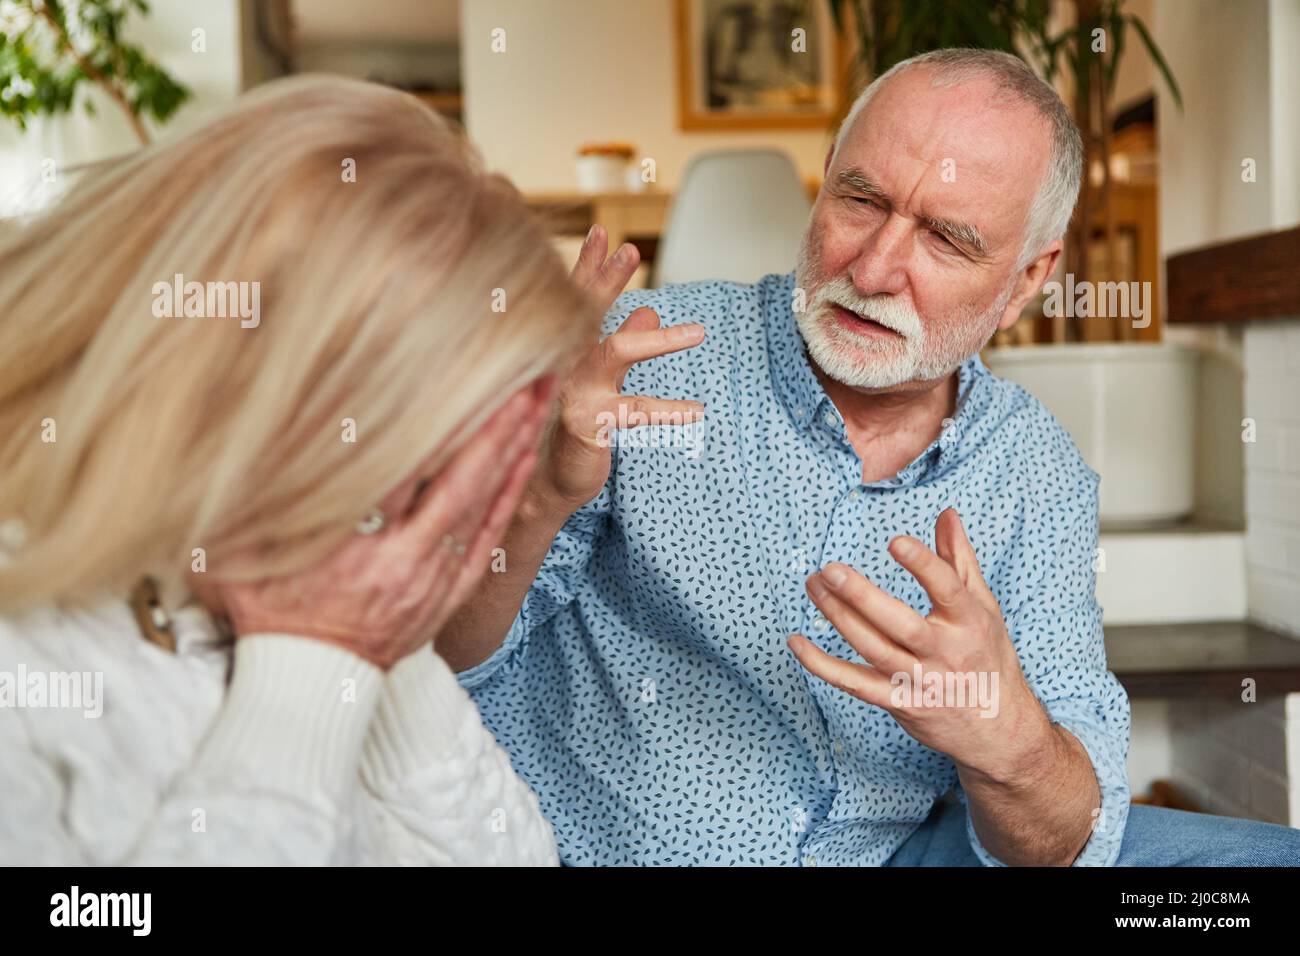 Der alte Mann streitete zu Hause mit seiner weinenden Frau als Zeichen von Konflikt und Eifersucht Stockfoto